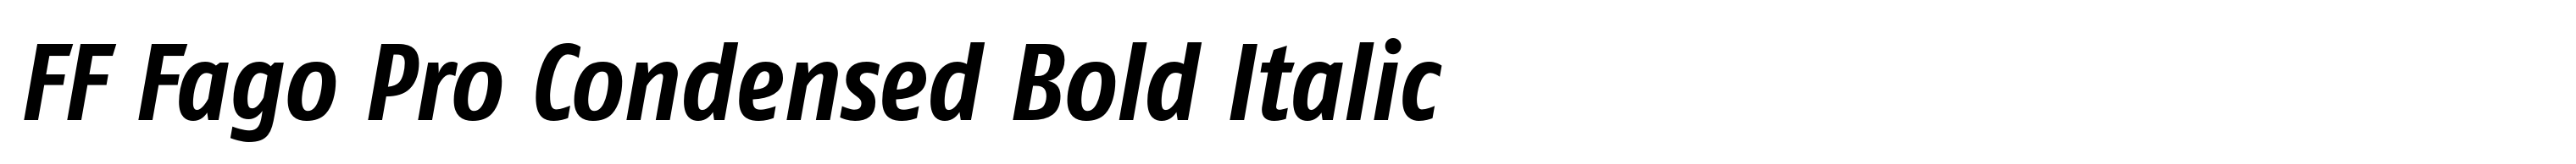 FF Fago Pro Condensed Bold Italic